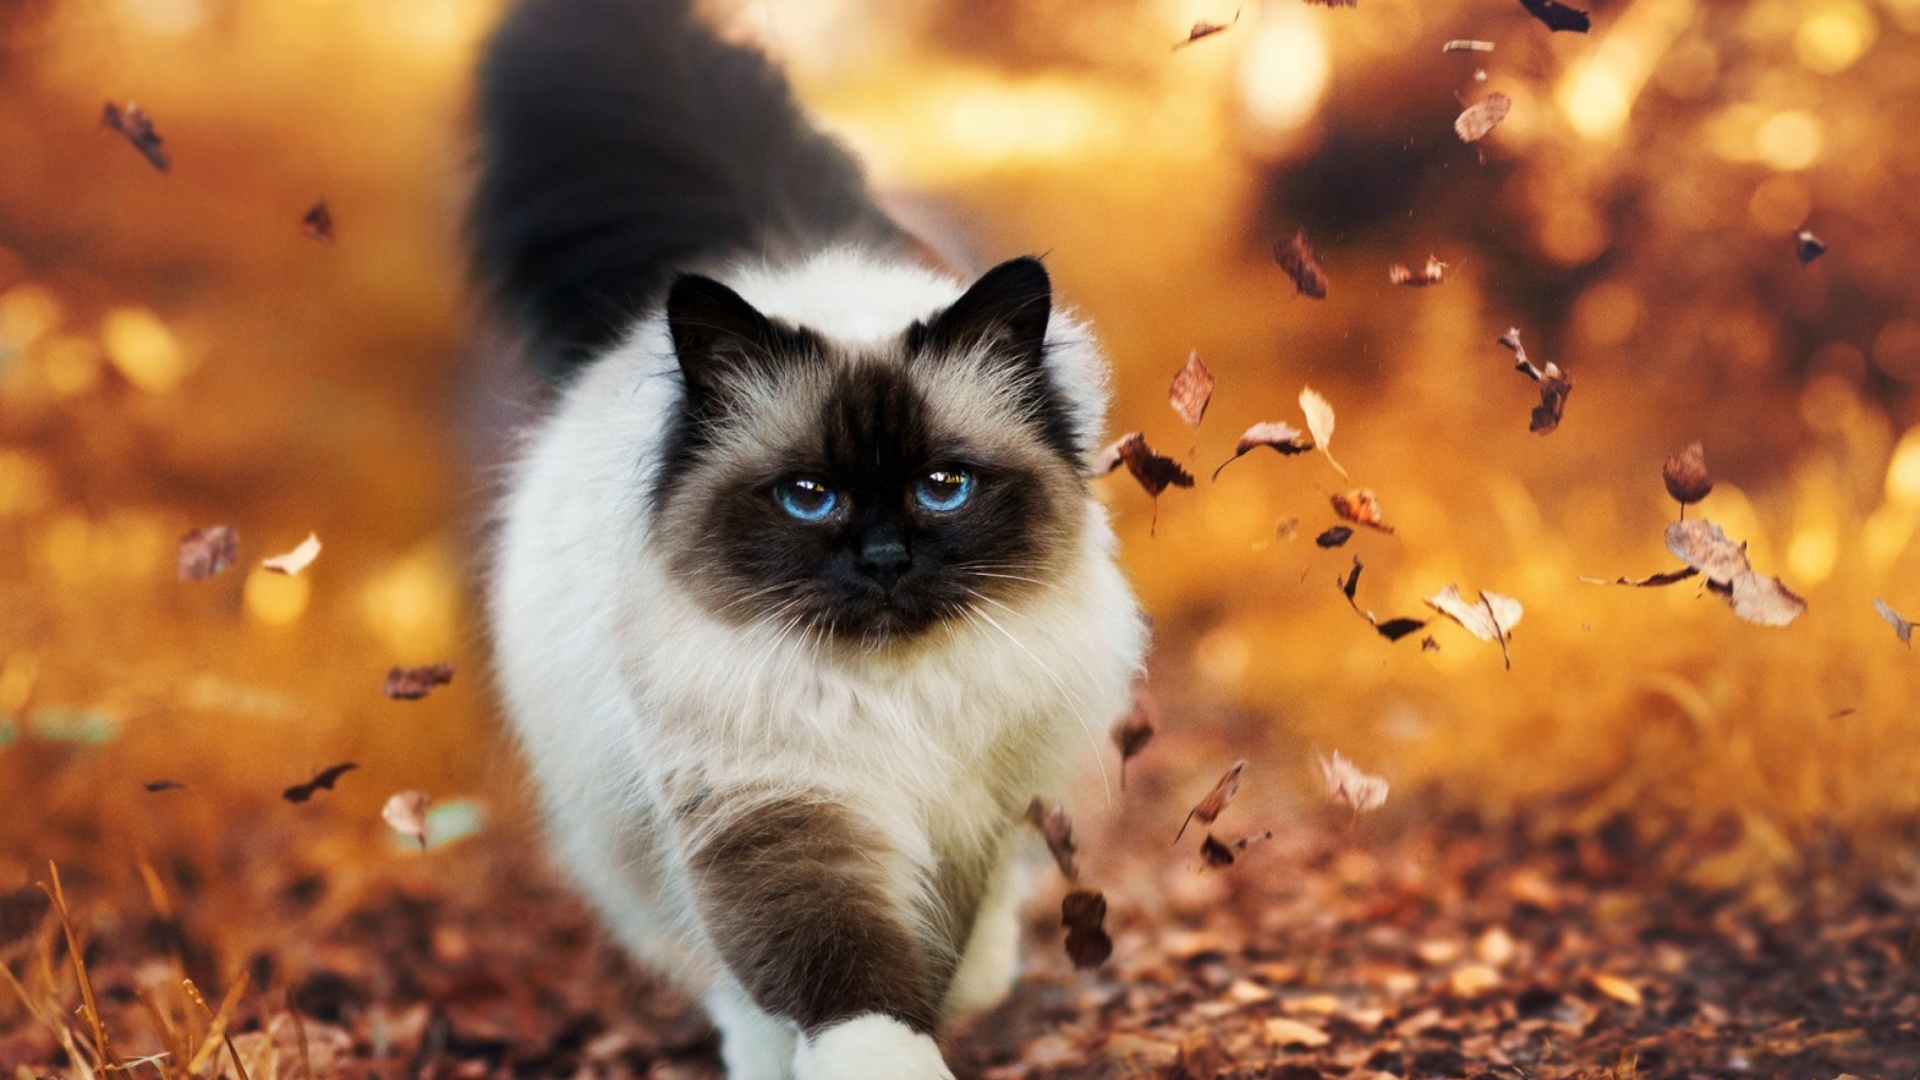 Siamese autumn cat screenshot #1 1920x1080